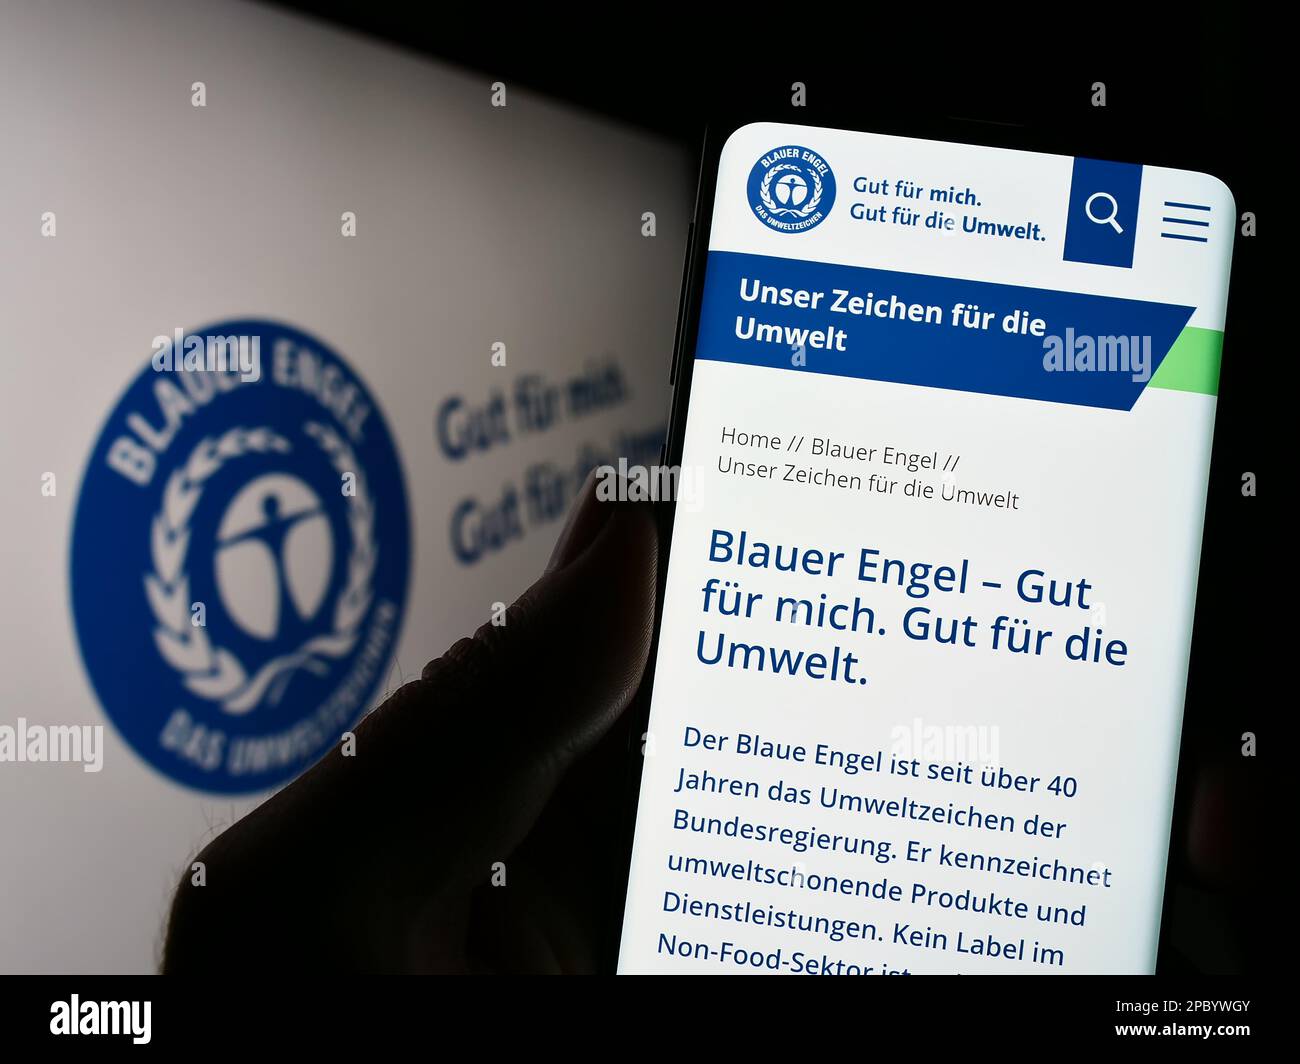 Persona que sostiene el teléfono móvil con el sitio web de la etiqueta ambiental alemana Blauer Engel (Ángel Azul) en pantalla. Enfoque en el centro de la pantalla del teléfono. Foto de stock